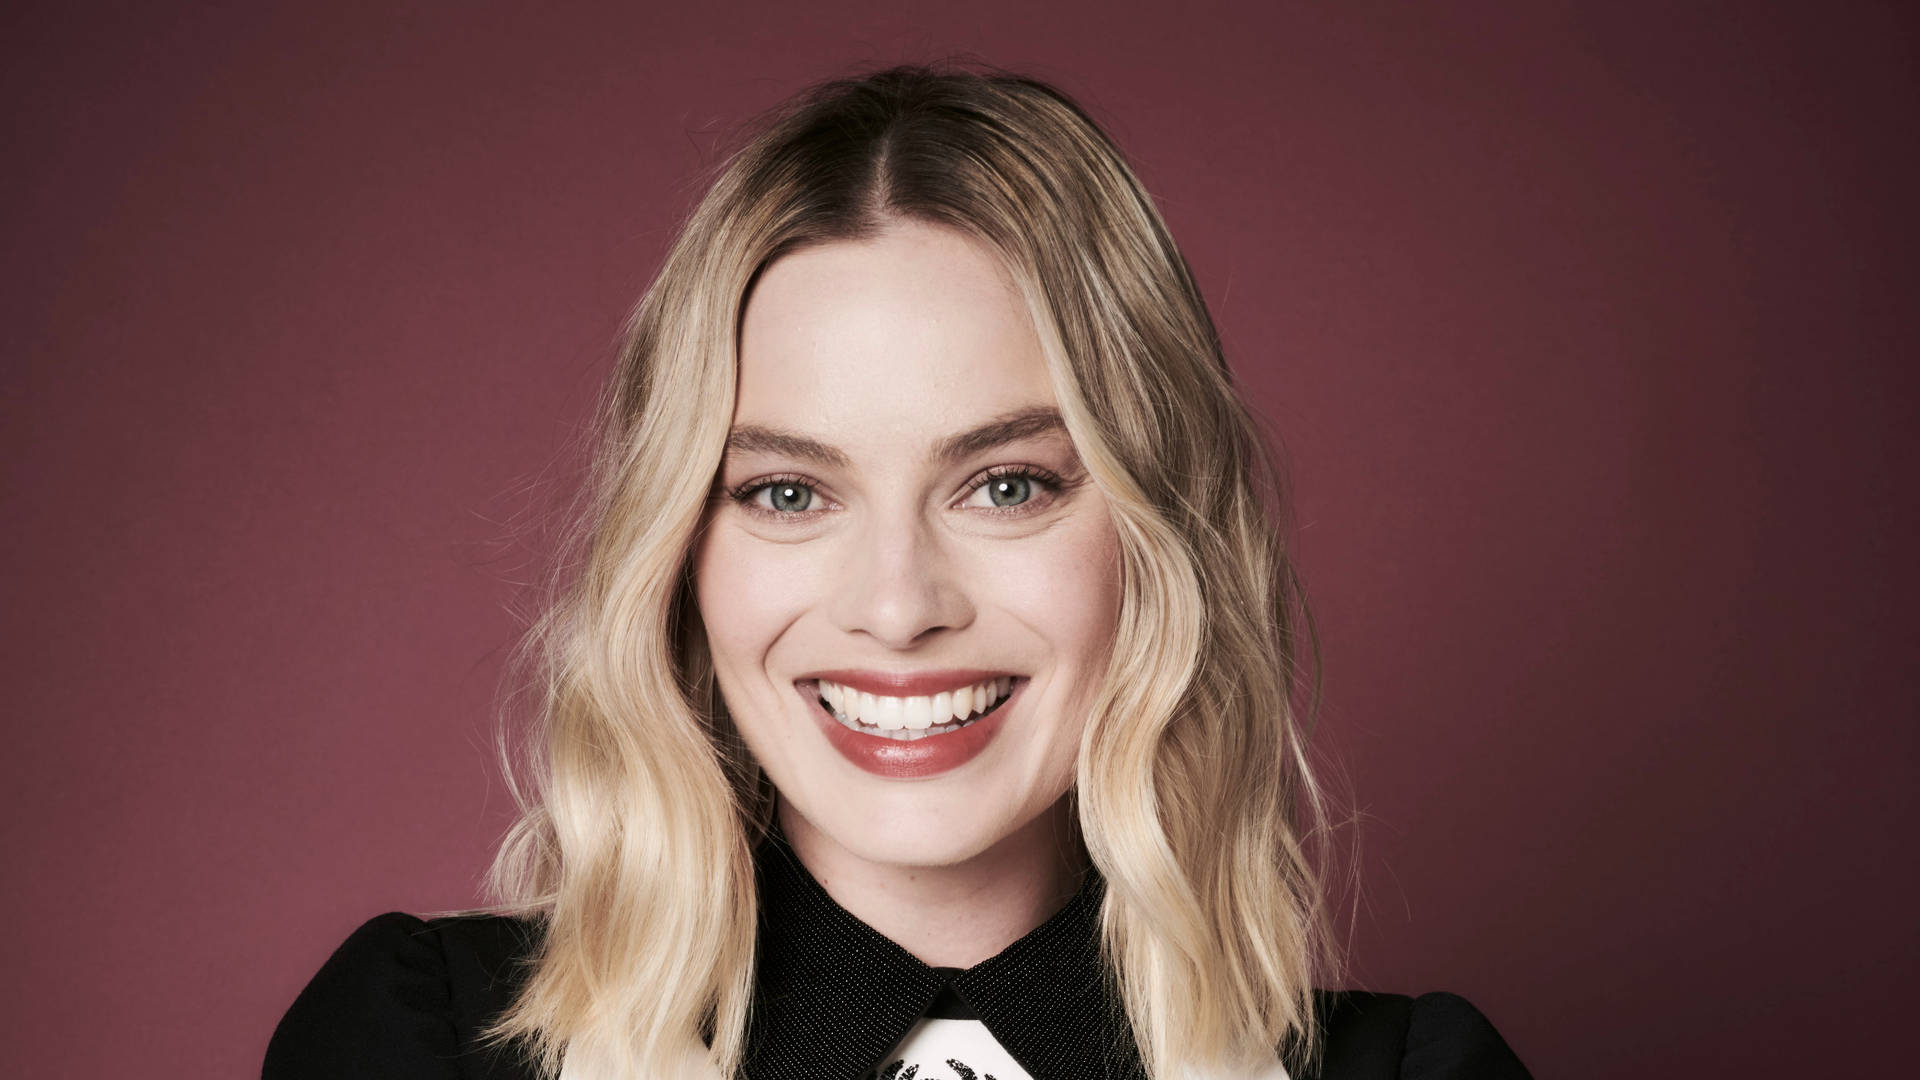 Smiling Margot Robbie Portrait Wallpaper